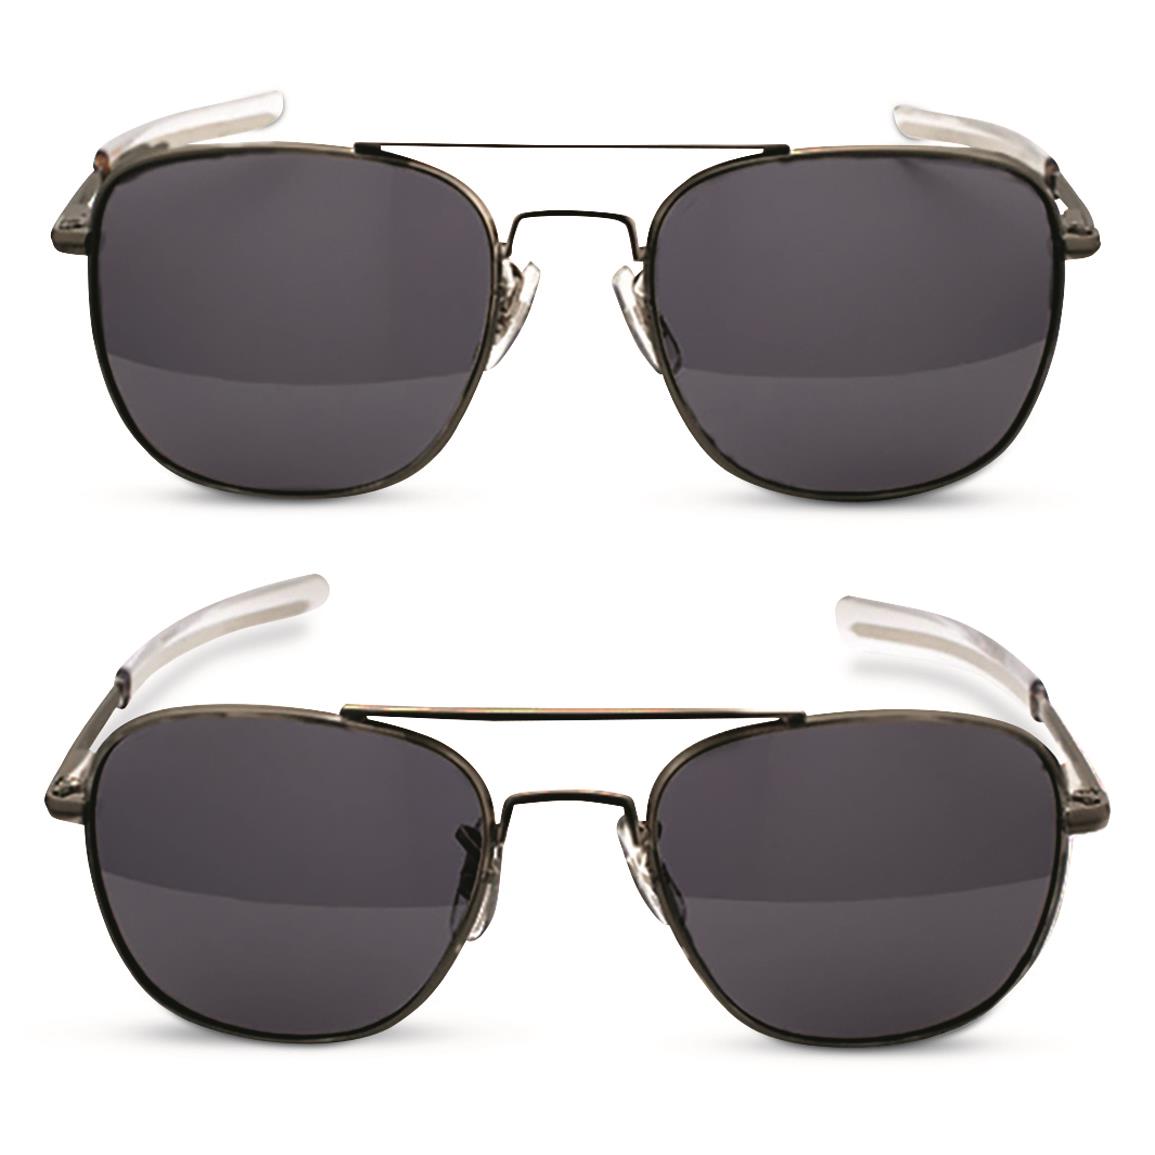 HUMVEE Men's Pilot Polarized Sunglasses, Black